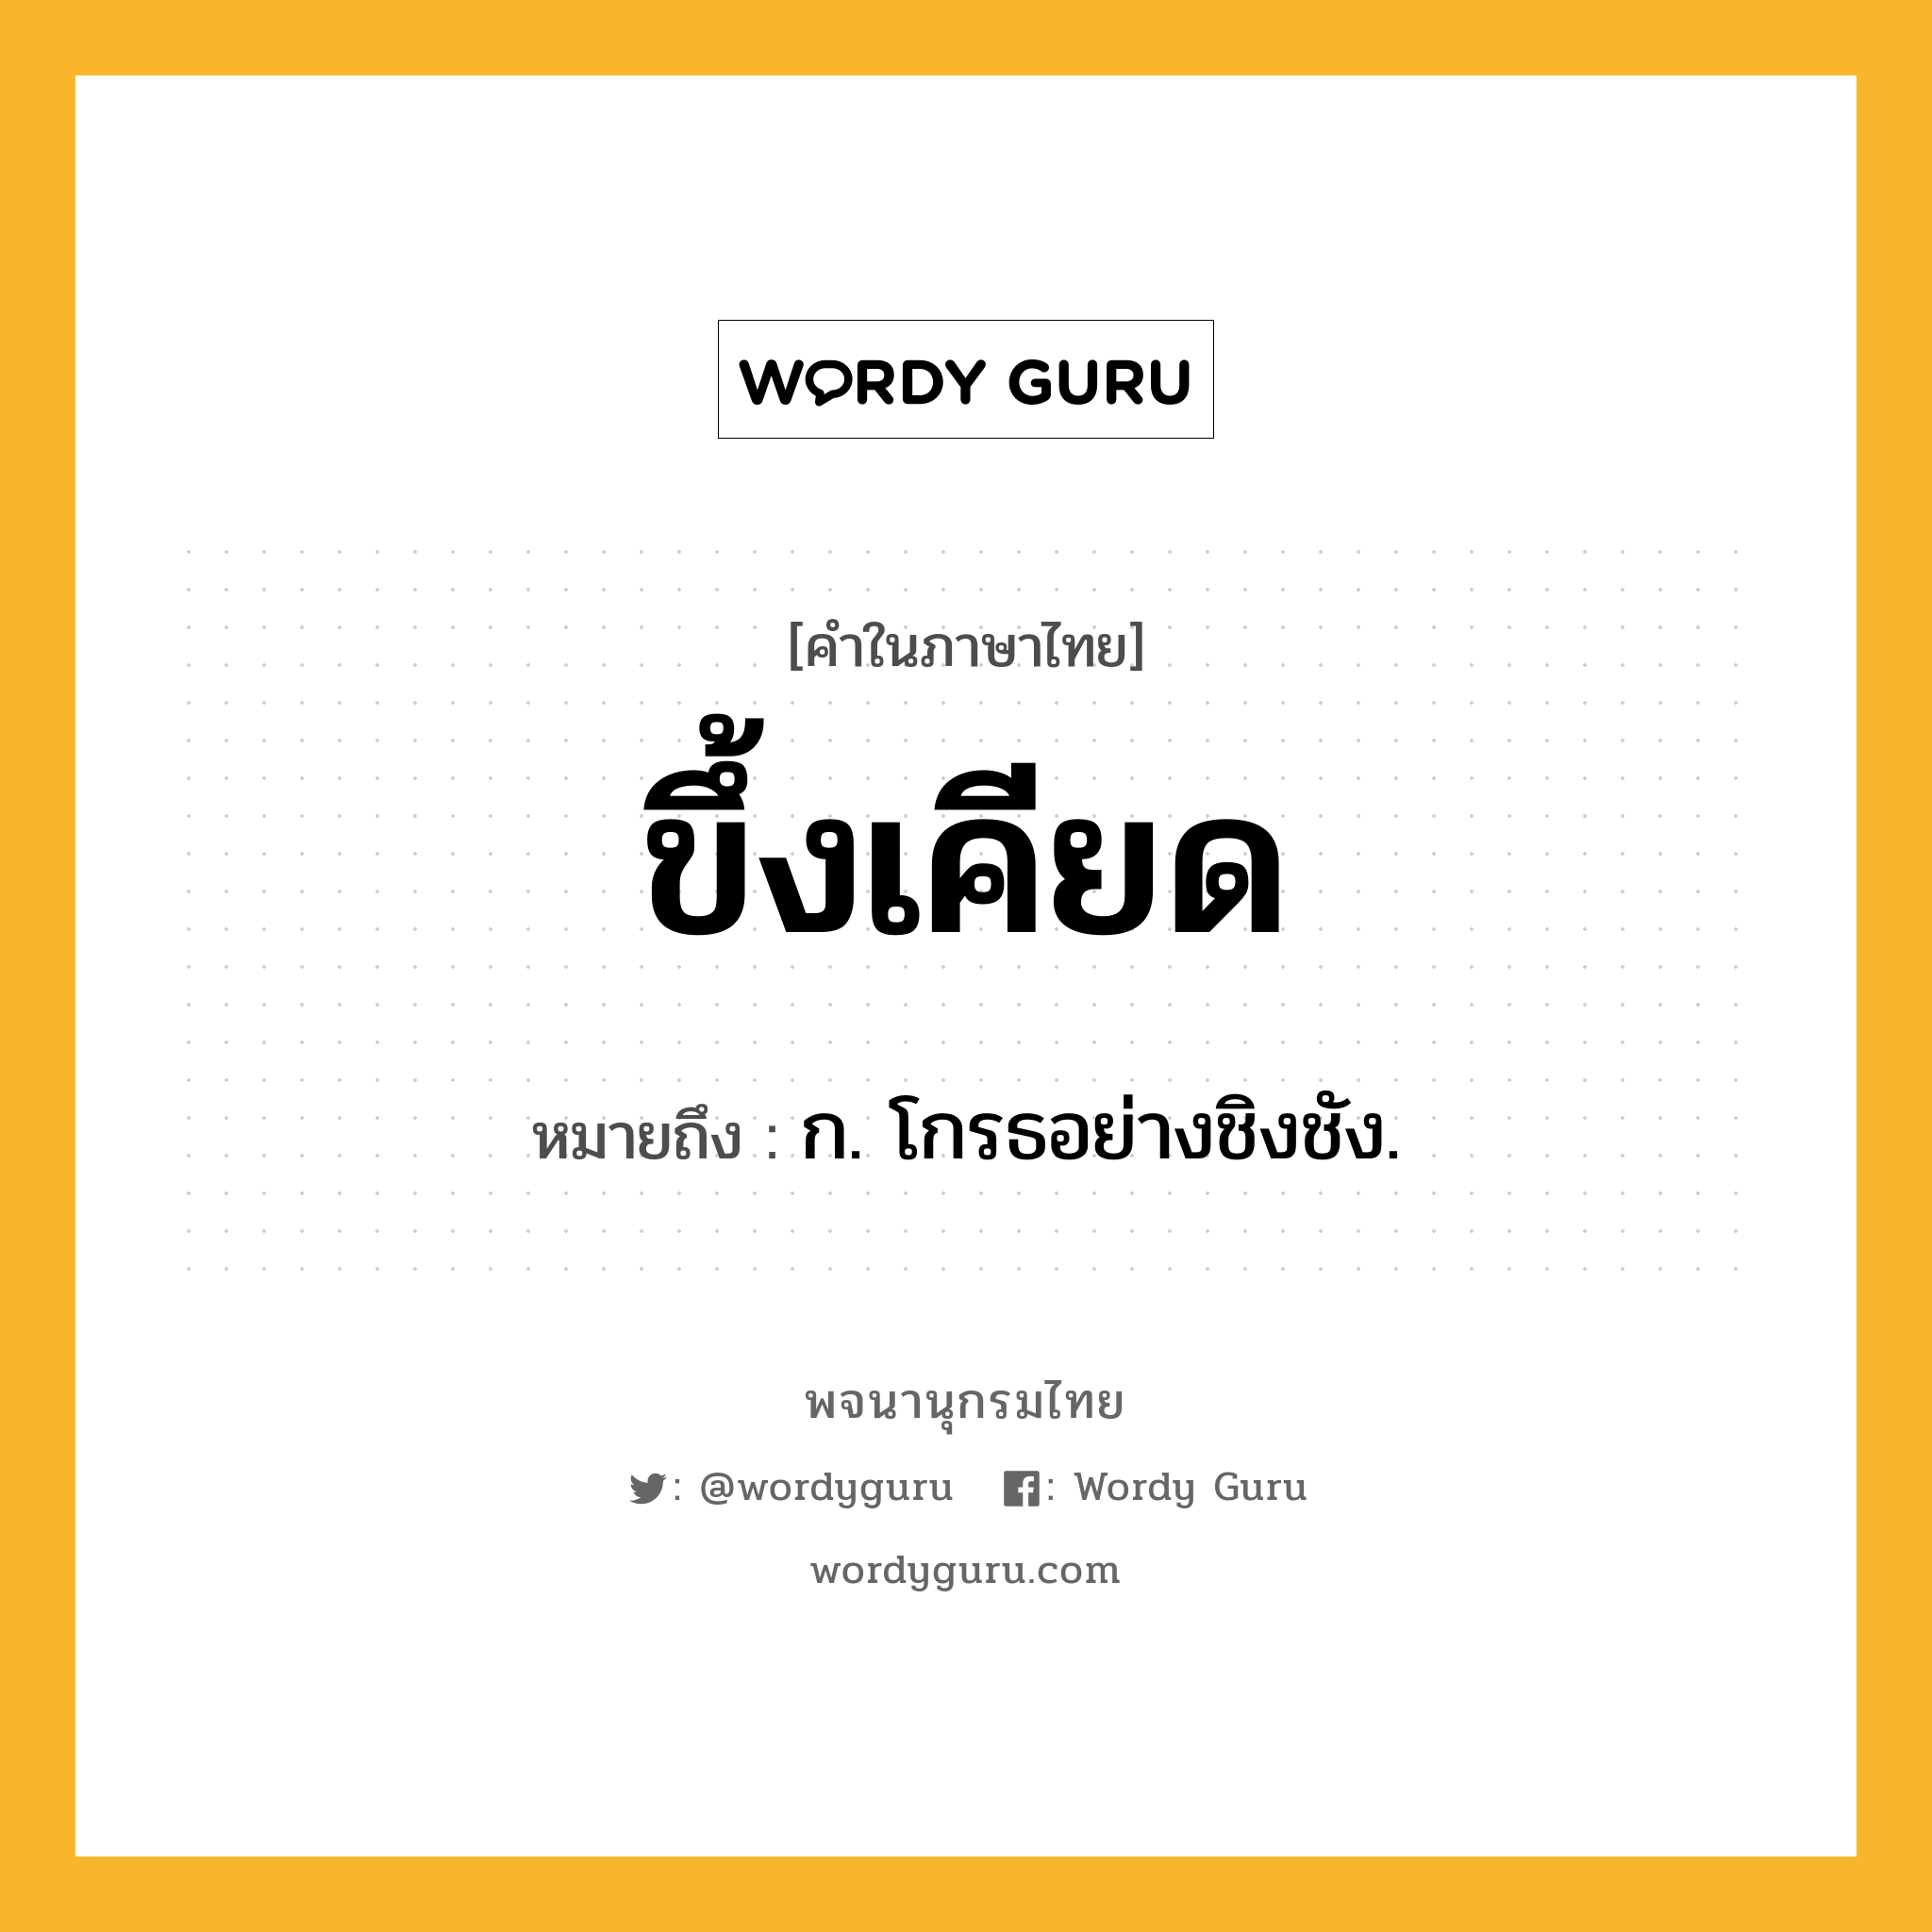 ขึ้งเคียด หมายถึงอะไร?, คำในภาษาไทย ขึ้งเคียด หมายถึง ก. โกรธอย่างชิงชัง.